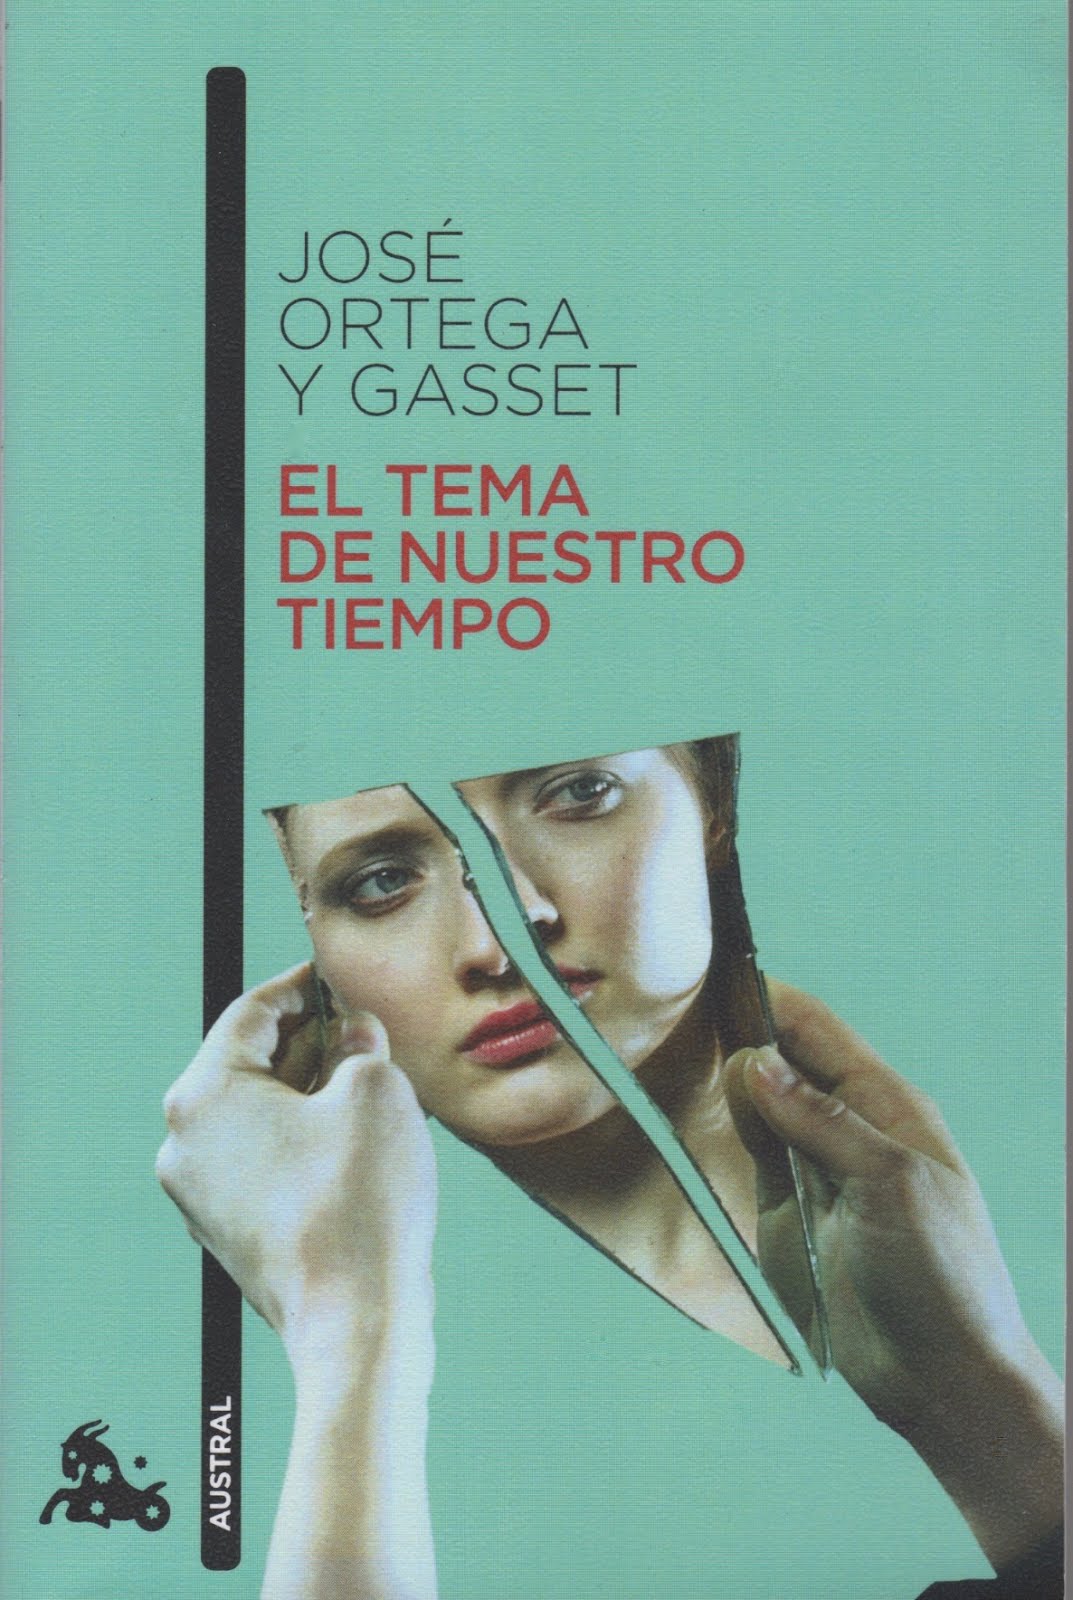 José Ortega y Gasset (El tema de nuestro tiempo